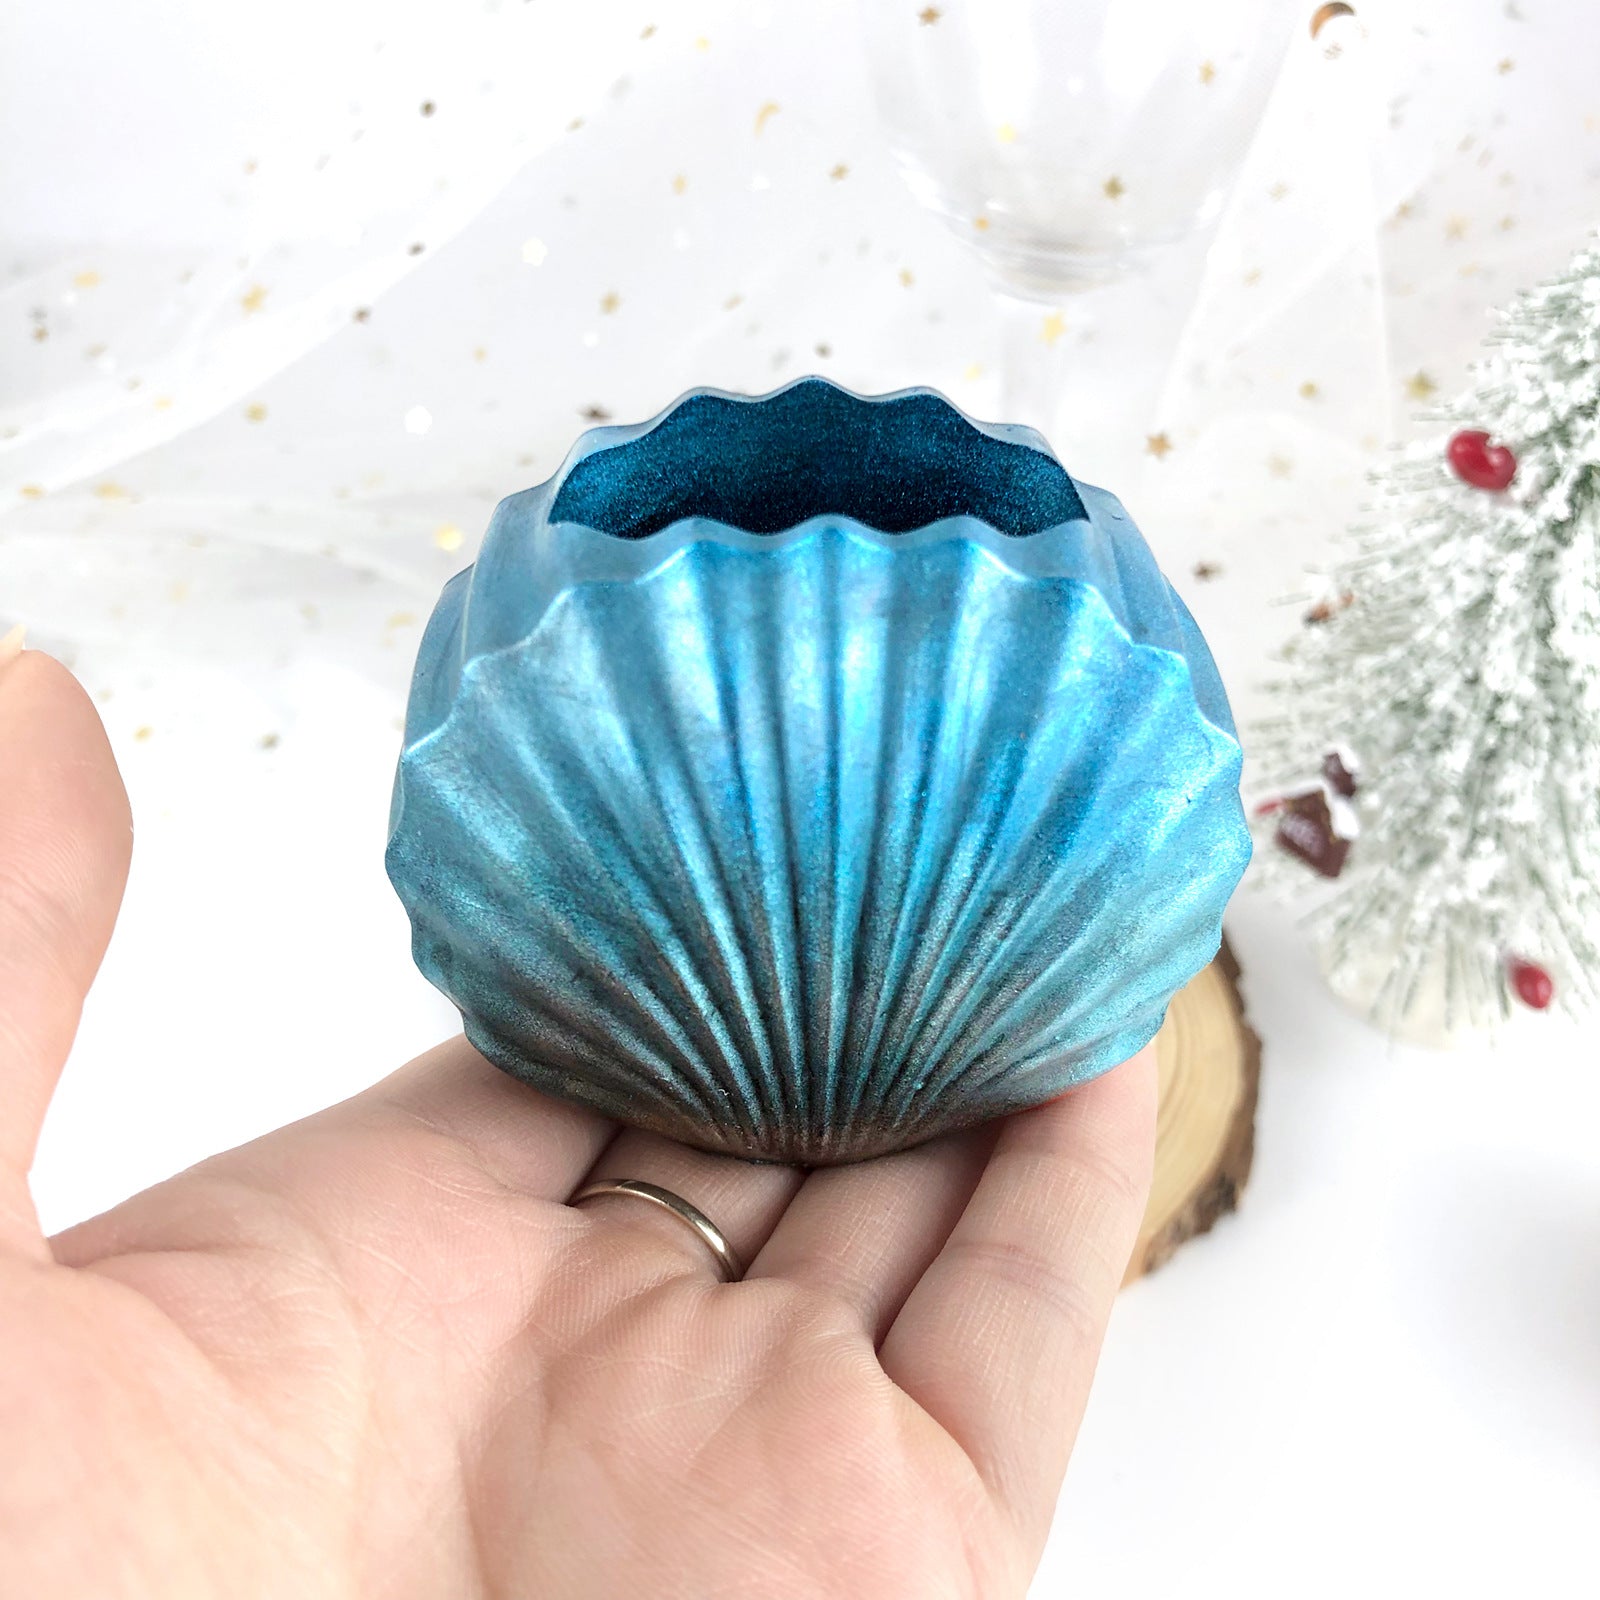 Shell Shape Flower Vase Resin Mold